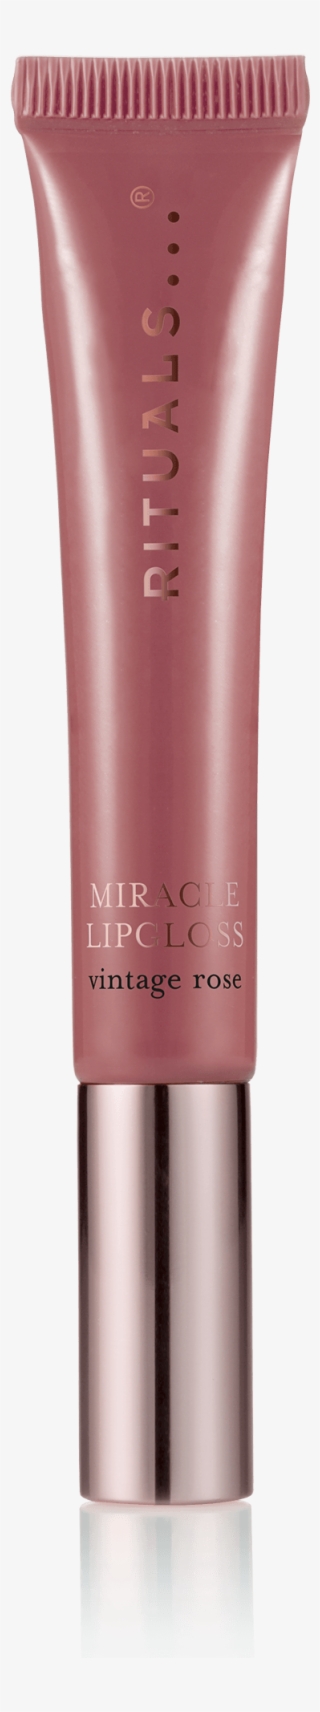 Miracle Lipgloss - Vintage Rose - 1 - - Rituals Lipgloss